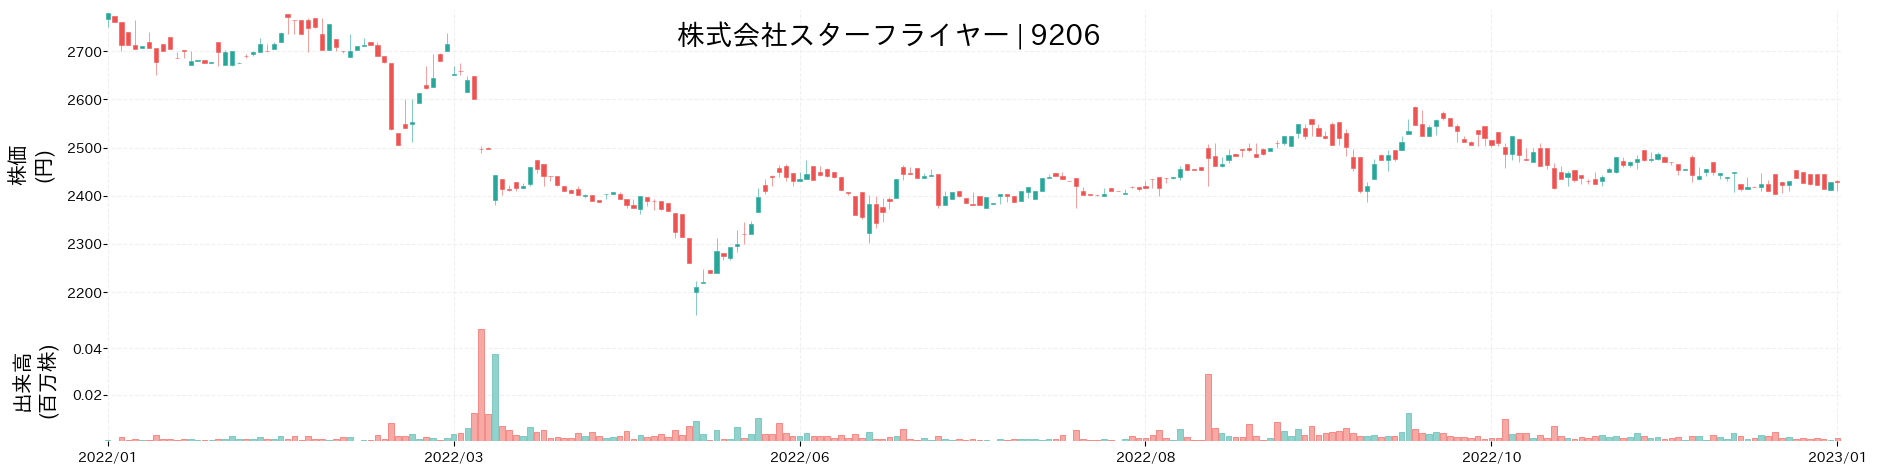 スターフライヤーの株価推移(2022)